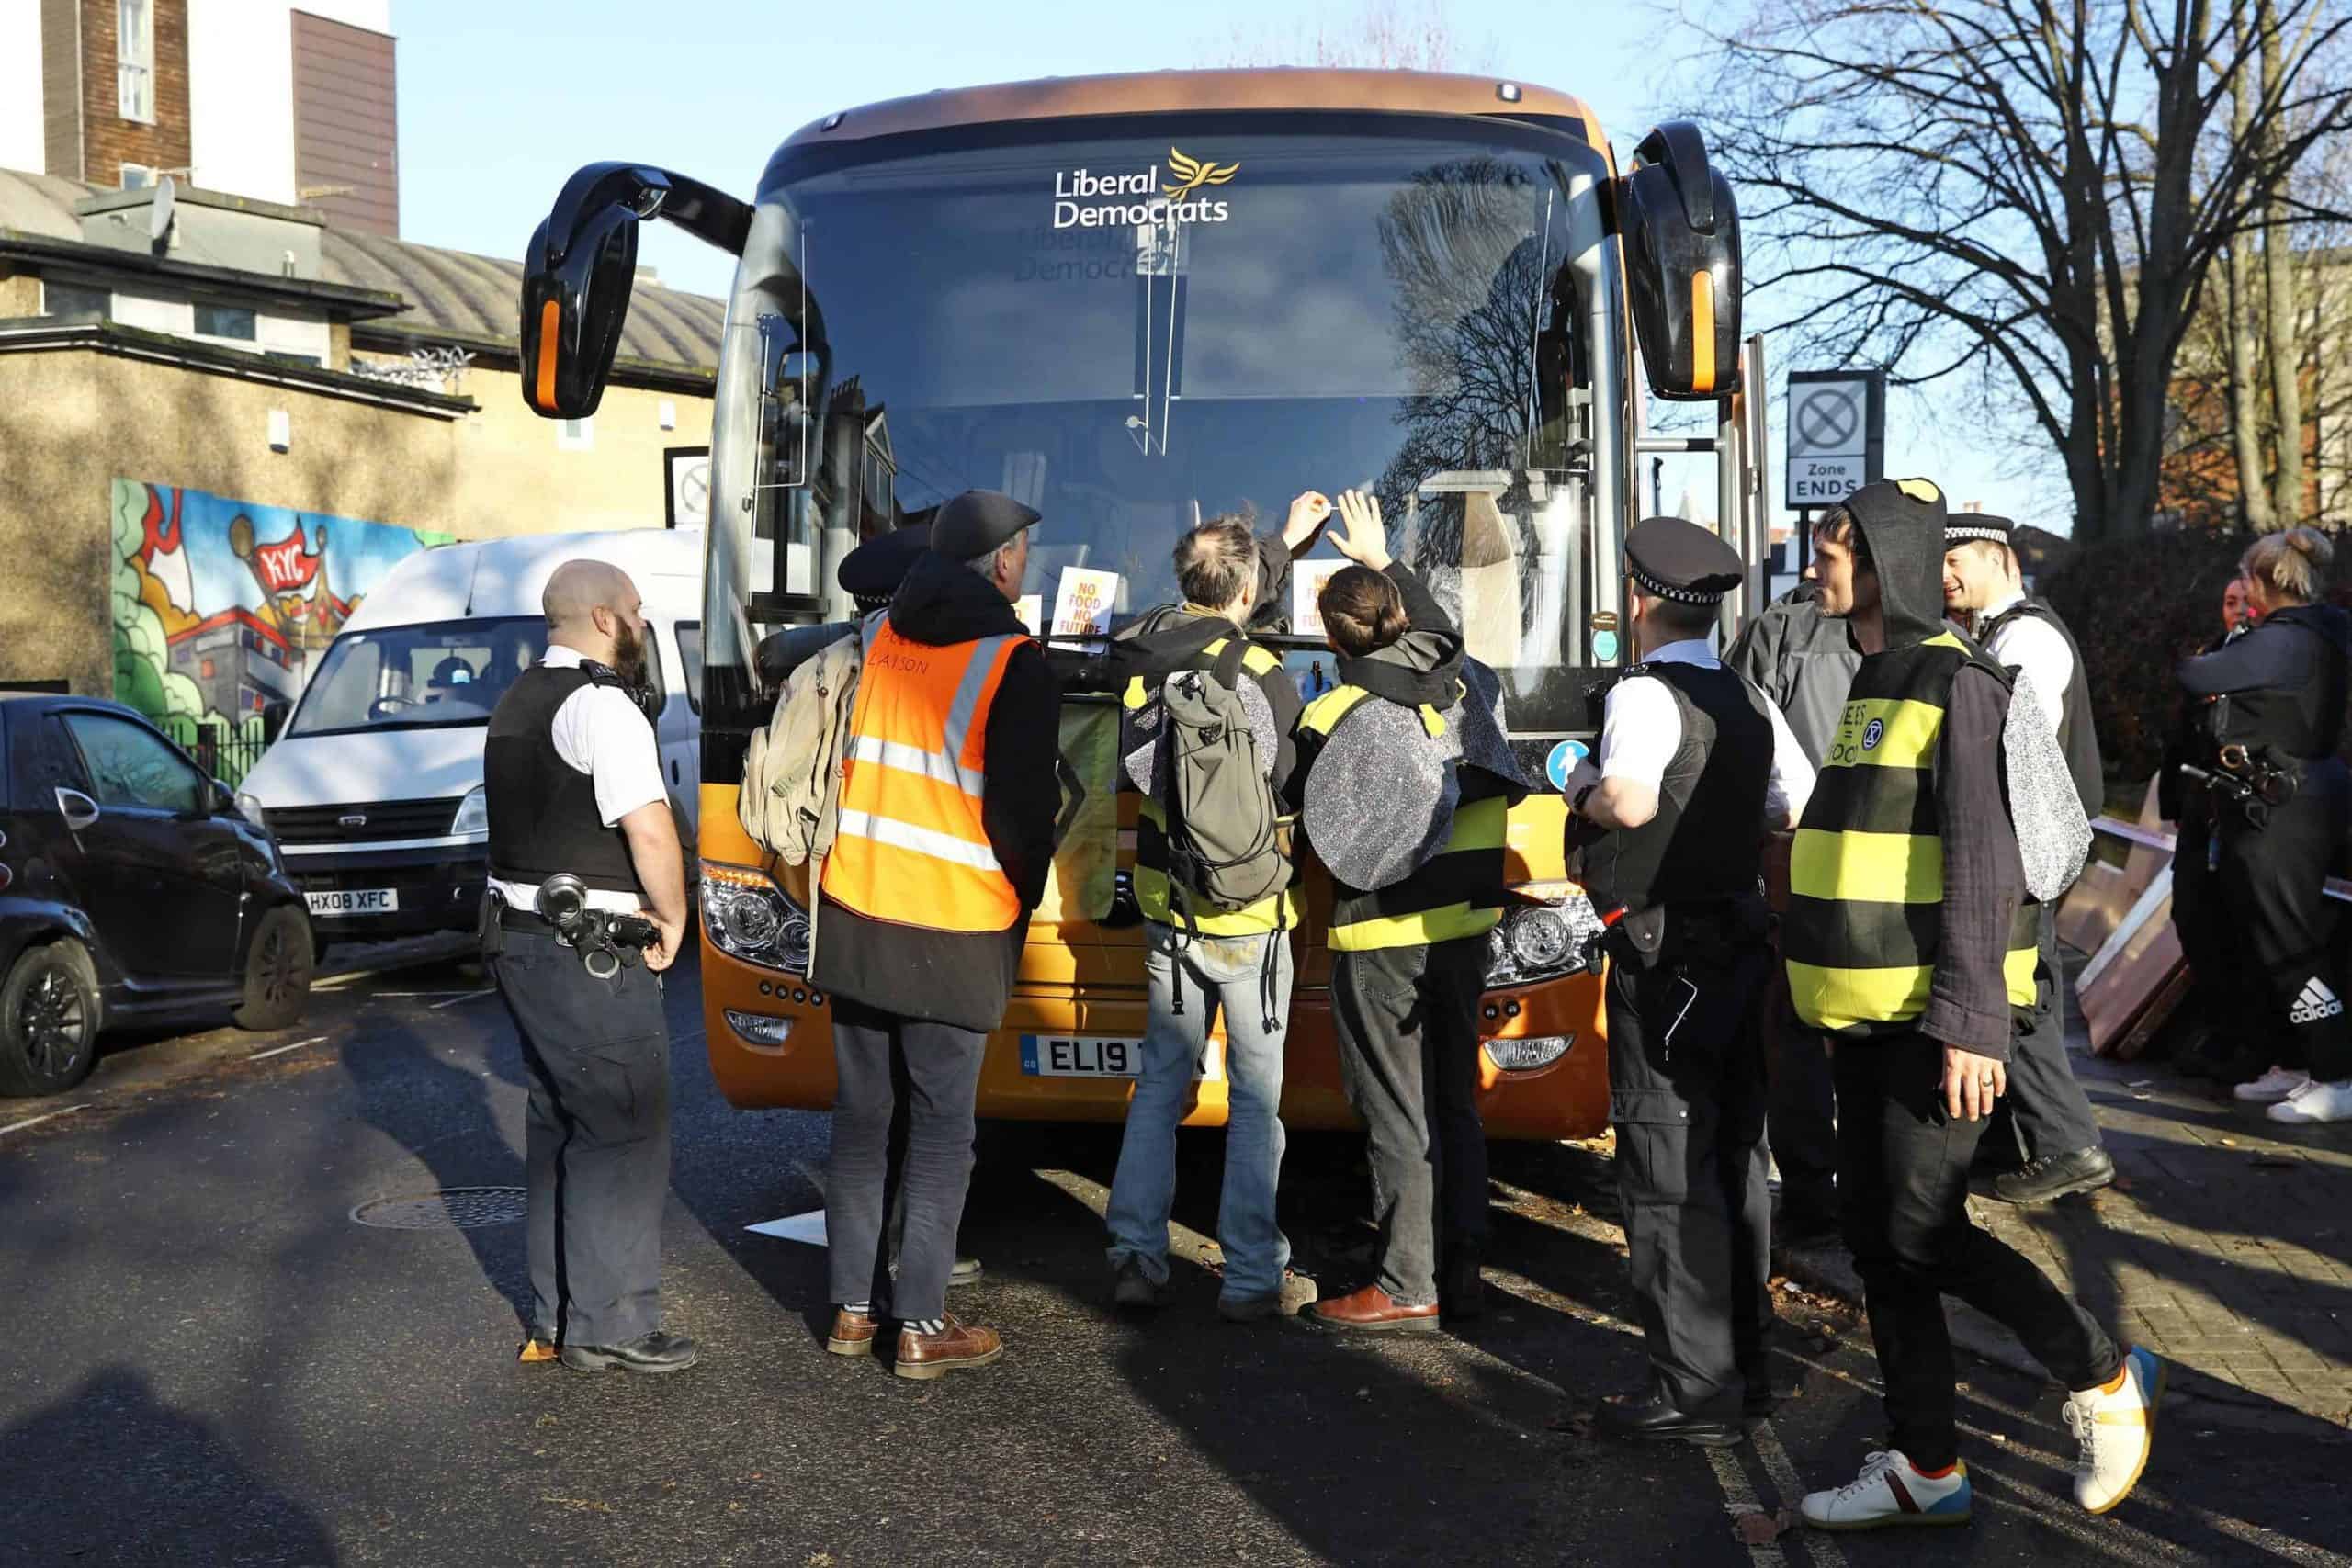 Climate change activists target Lib Dem bus